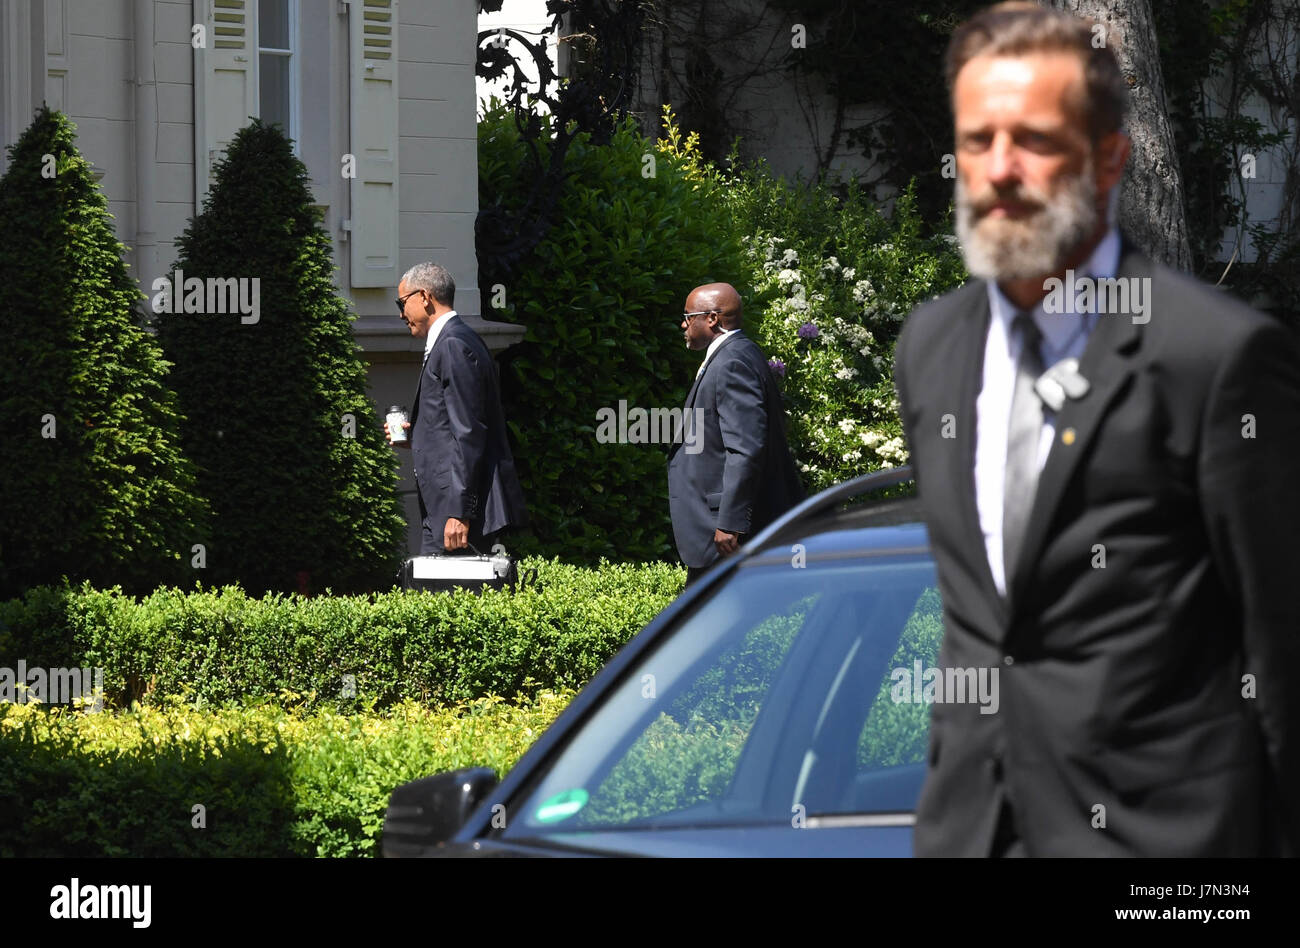 L'ancien président américain Barack Obama (l) arrive avec entourage au Brenners Park Hotel à Baden-Baden, Allemagne, 25 mai 2016. Il est à l'attribution de la Deutscher Medienpreis 2016 (German Media Award) dans la soirée. Photo : Uli Deck/dpa Banque D'Images